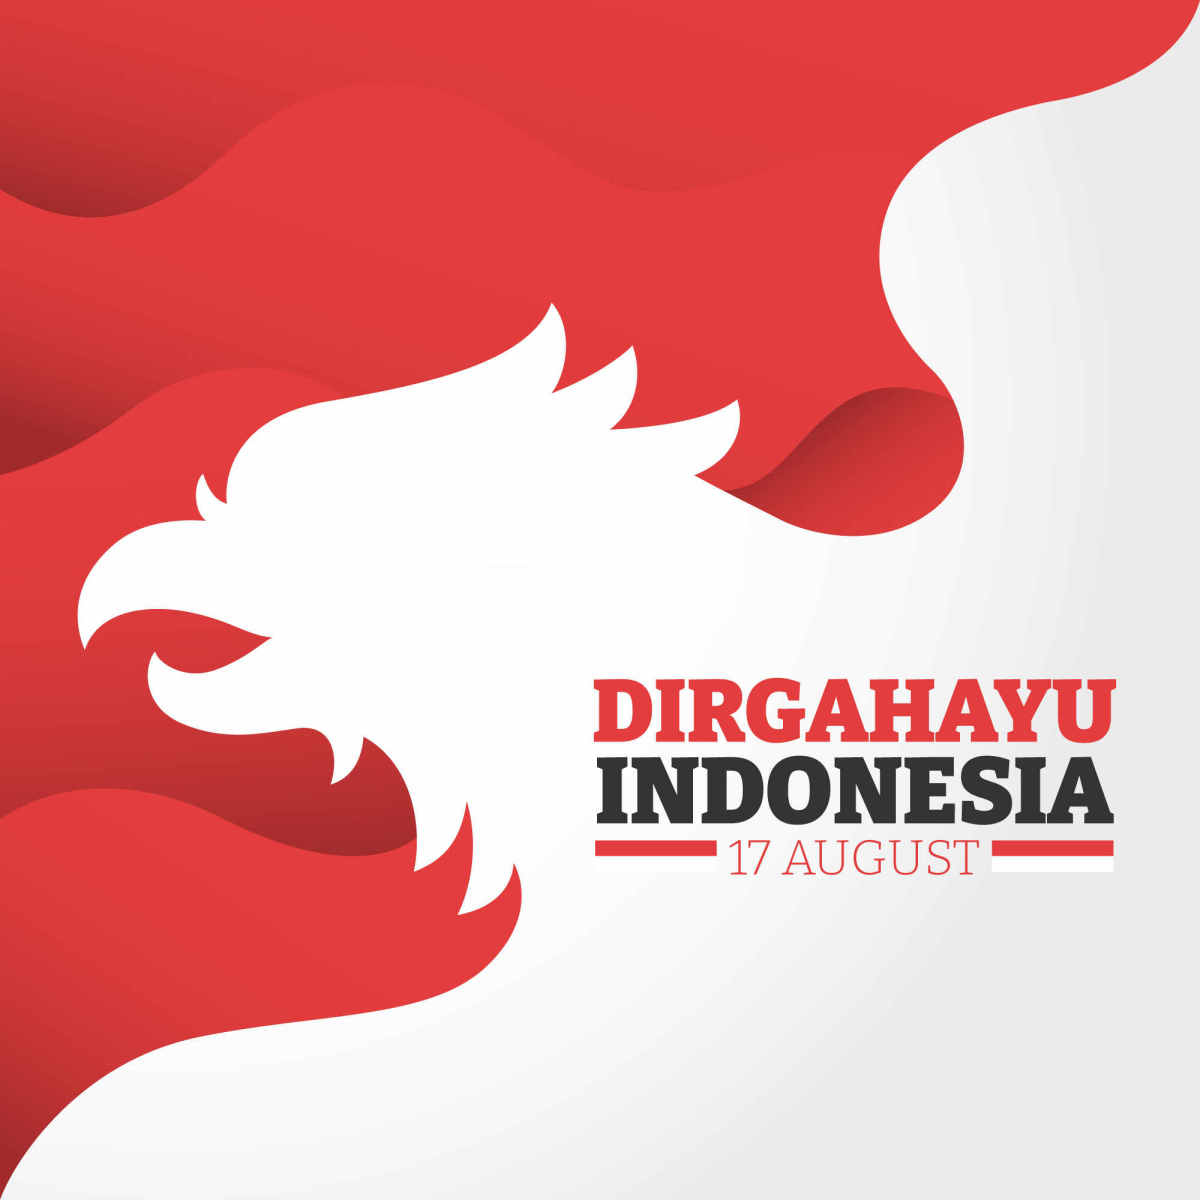 印度尼西亚独立日庆典